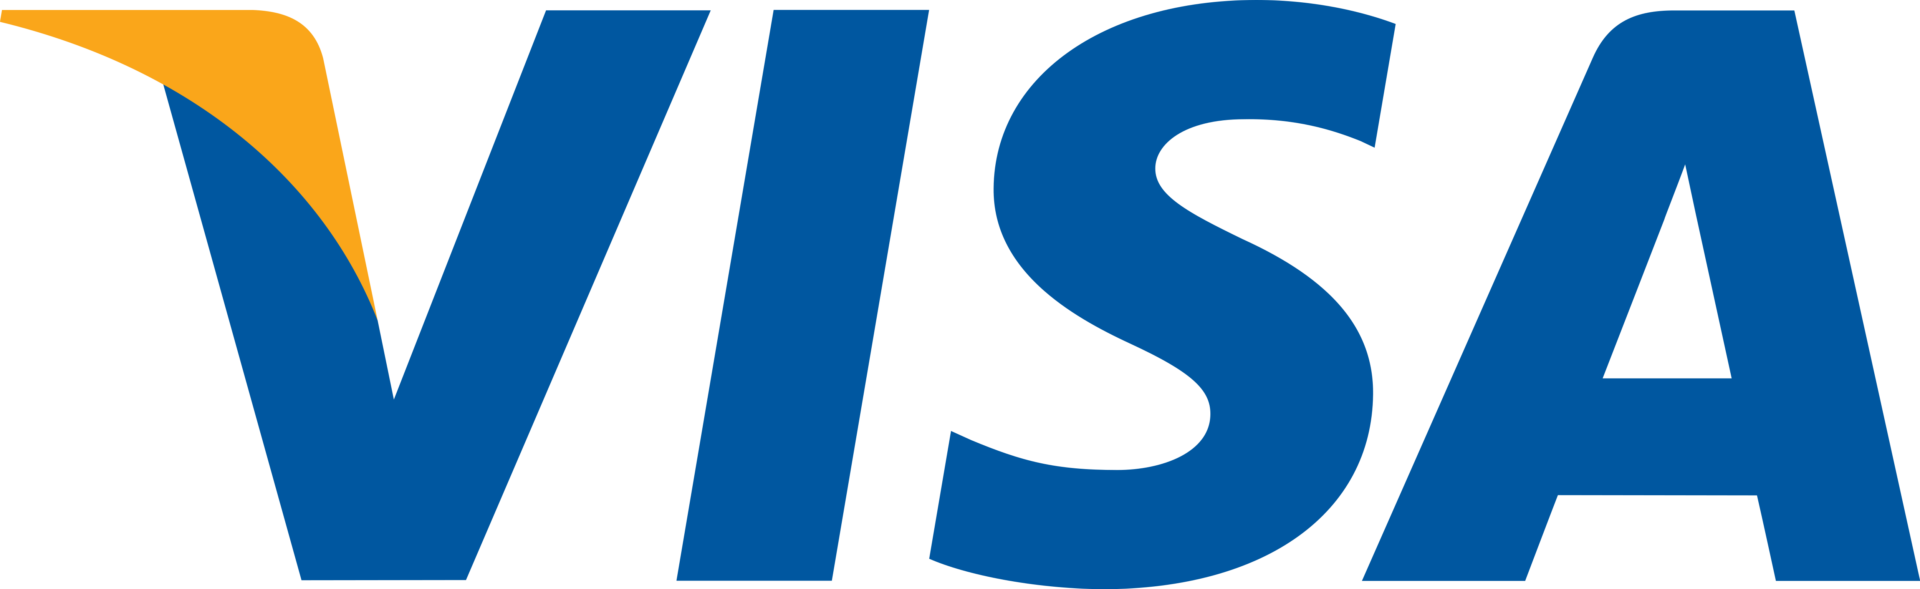 visa-logo-1